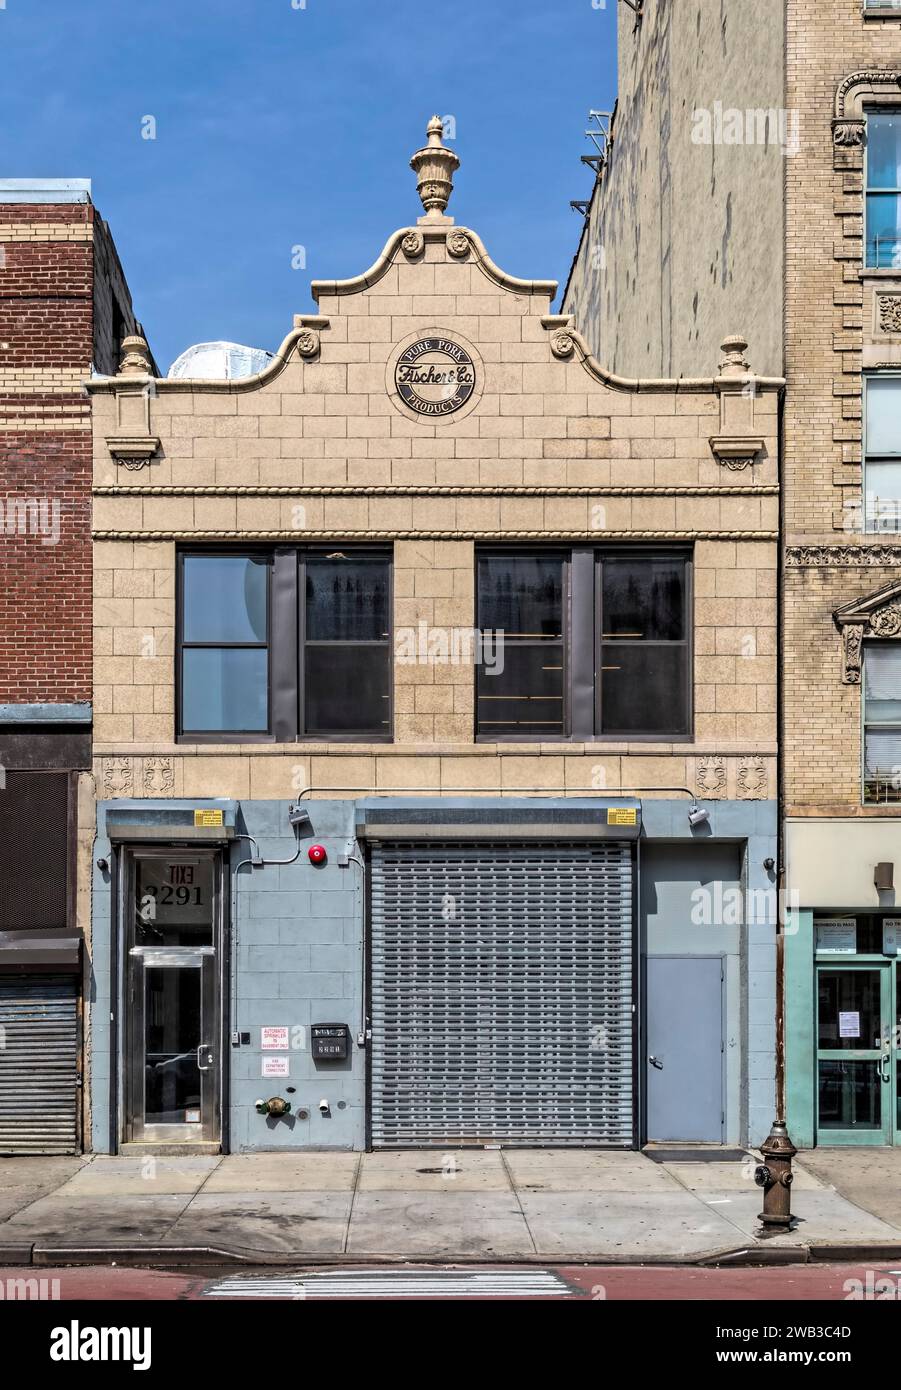 Per questa sezione della Second Avenue, il 2291 è un fantastico edificio rivestito di terracotta, costruito nel 1929 e progettato da Richard Shutkind. Foto Stock